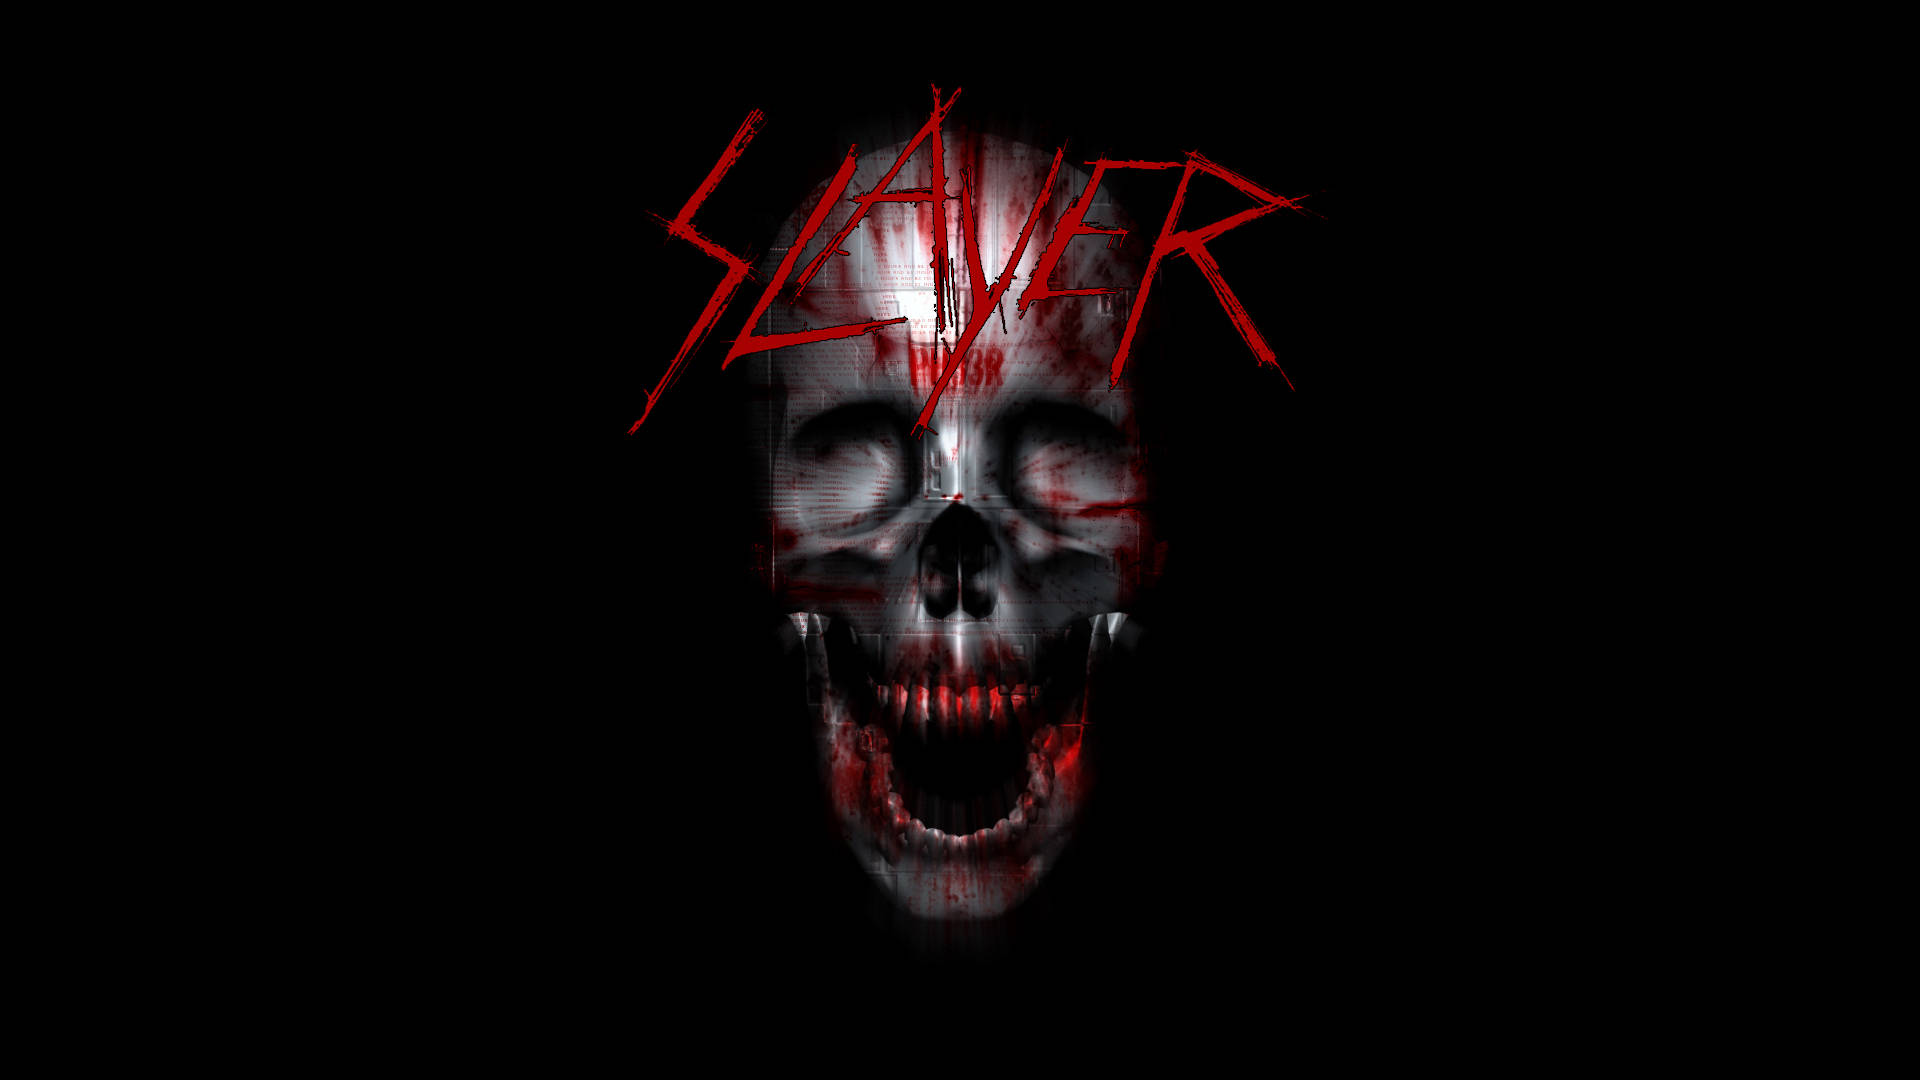 Creepy Face Slayer Band Background